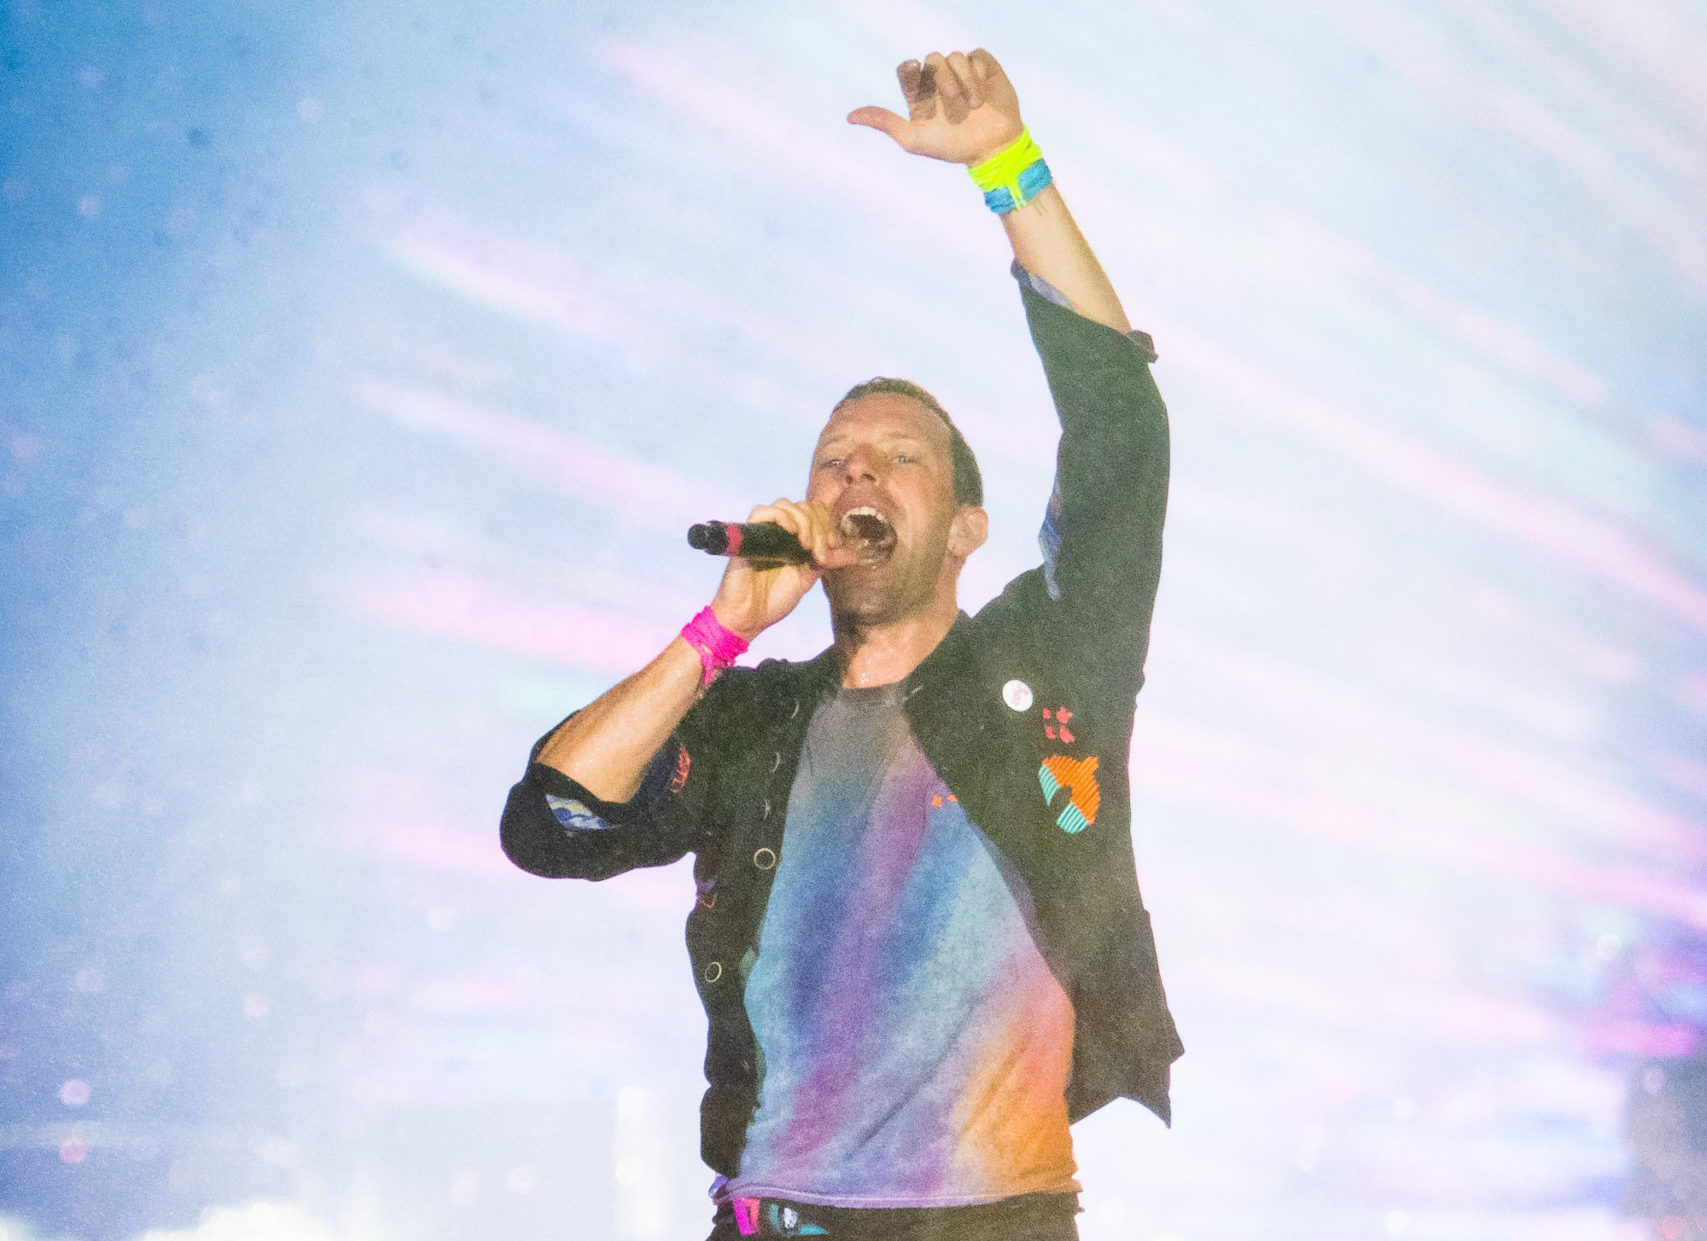 Coldplay. Créditos: Ariel Martini